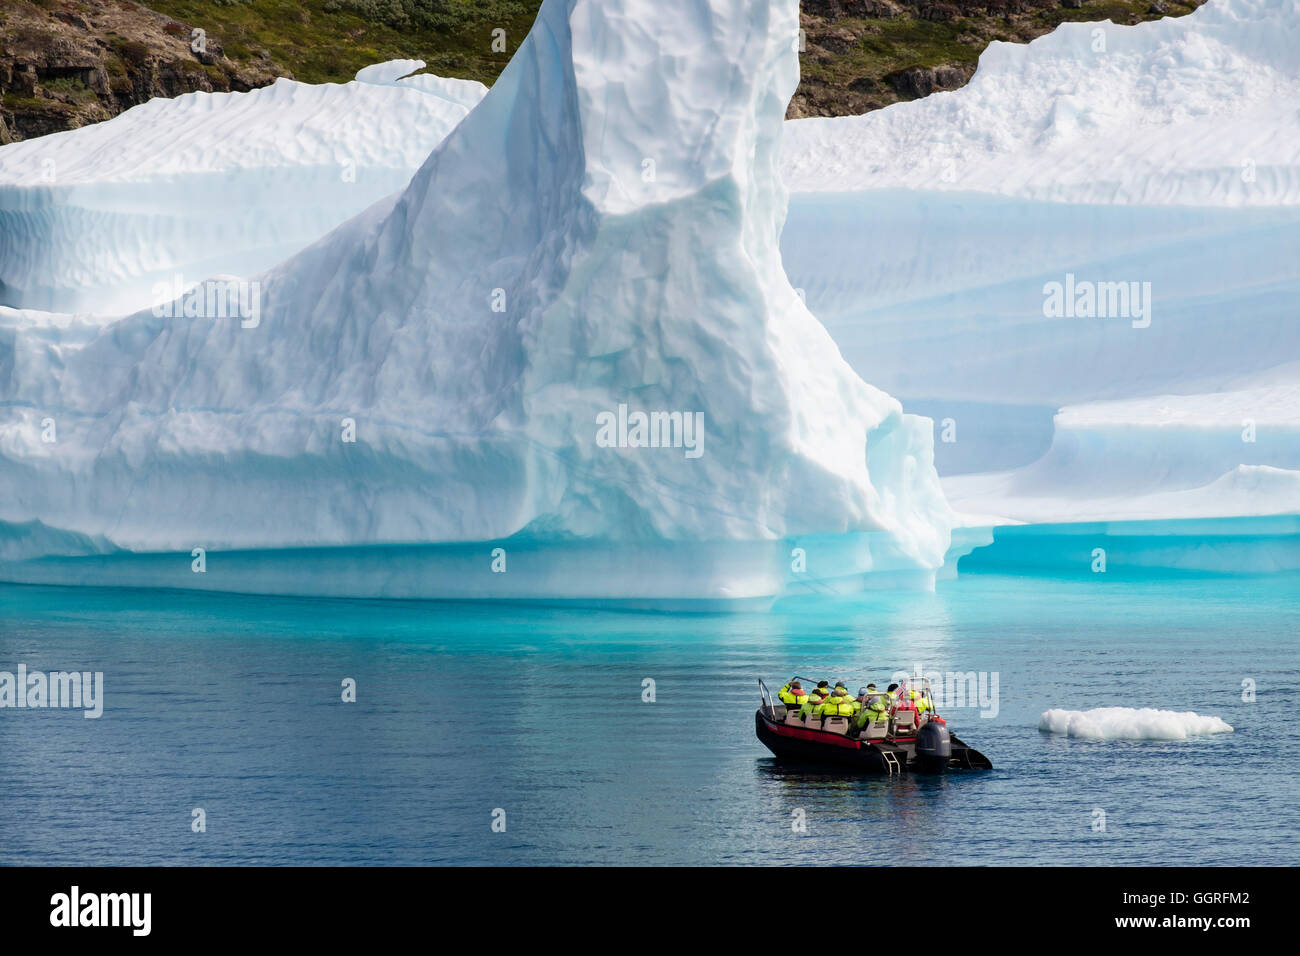 Les touristes dans un petit bateau à voile à proximité de grands Icebergs de glace fjord Tunulliarfik en été. Narsaq, Sud du Groenland Banque D'Images